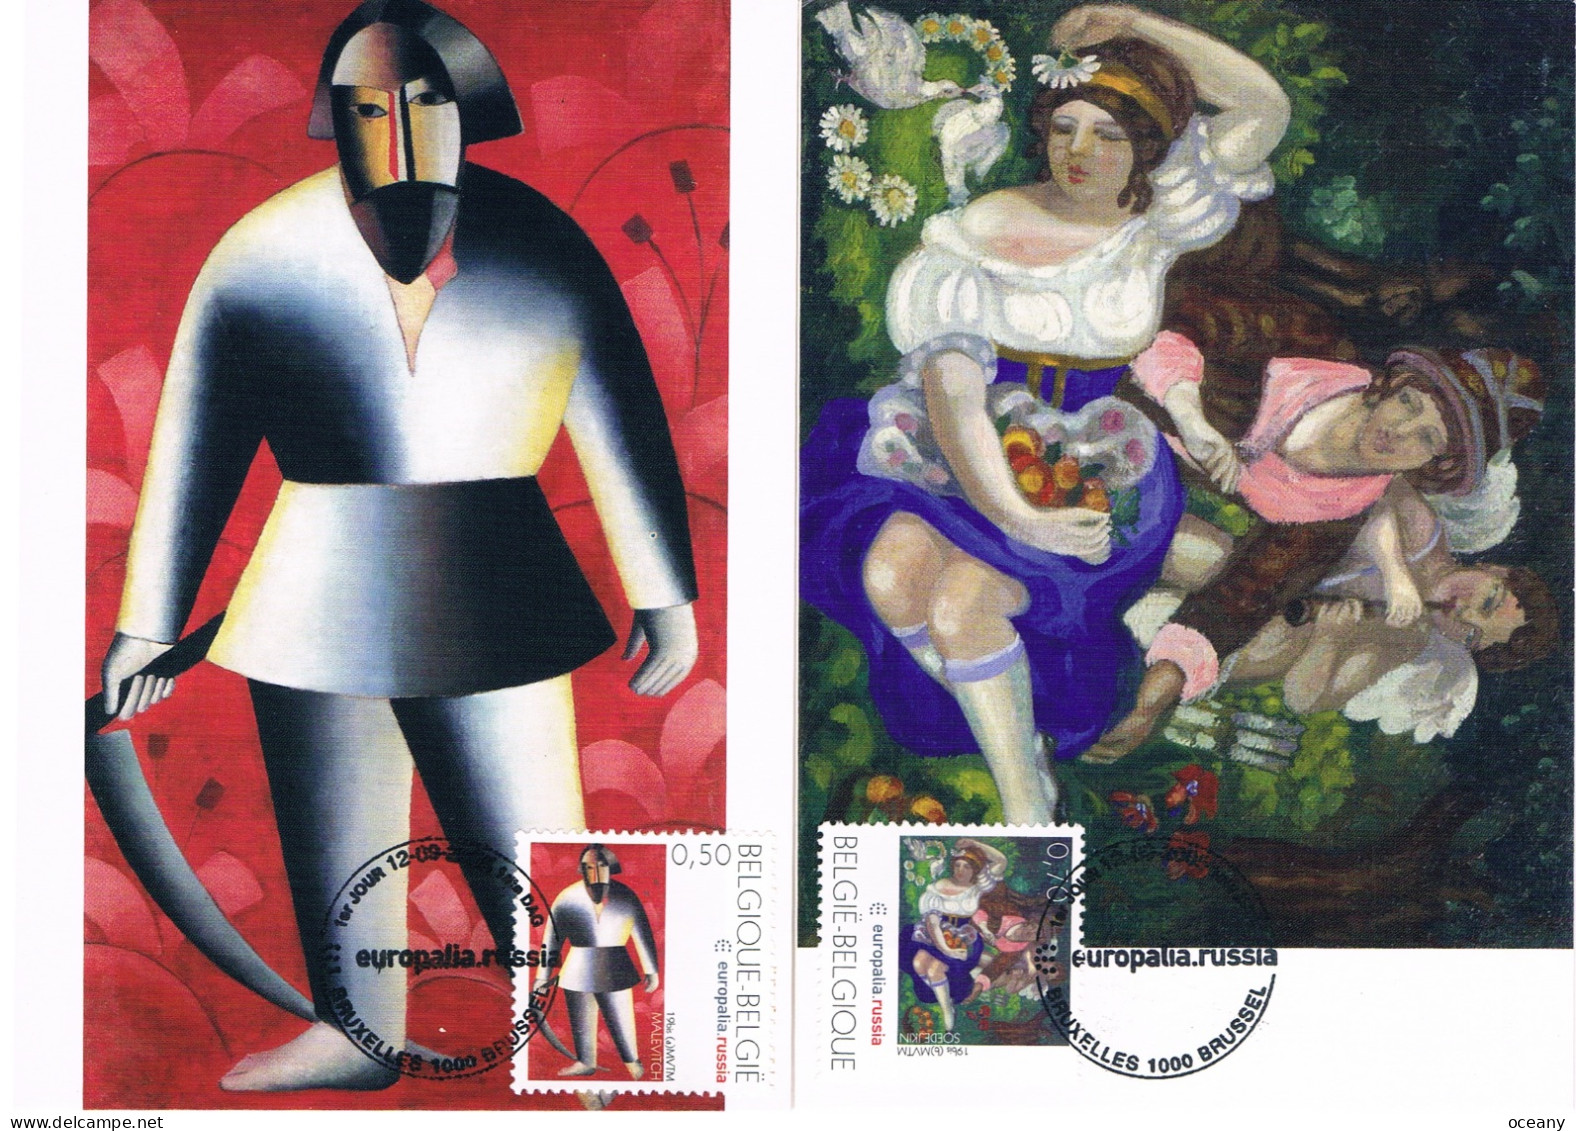 Belgique - Europalia - Russie : Peintures CM 3430/3431 (année 2005) - 2001-2010